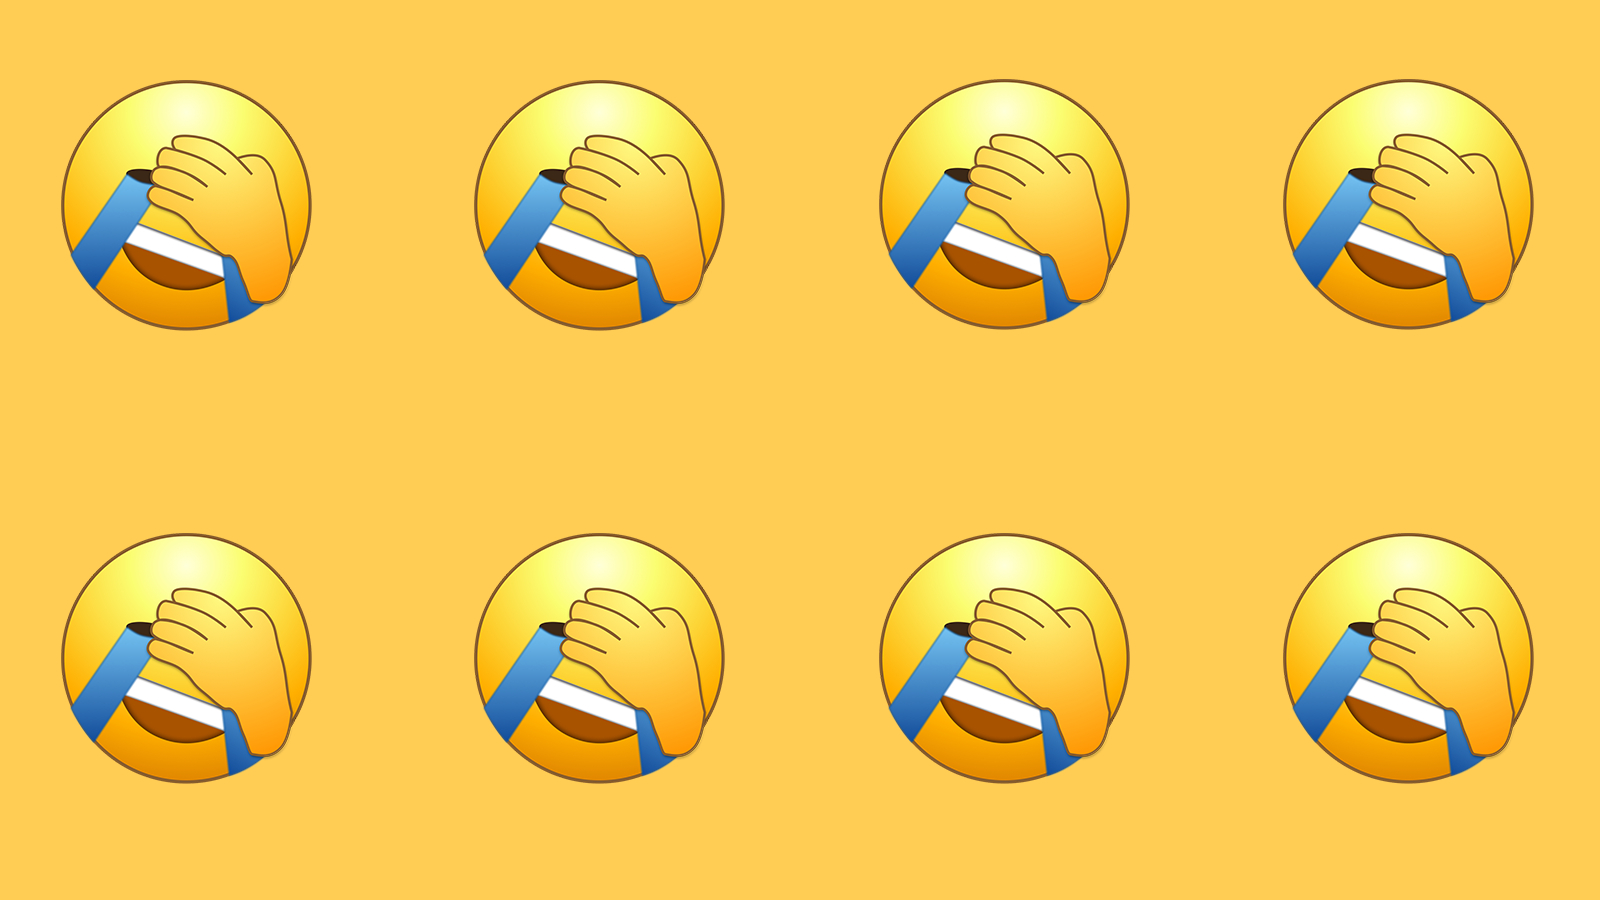 wechat emoji triggers